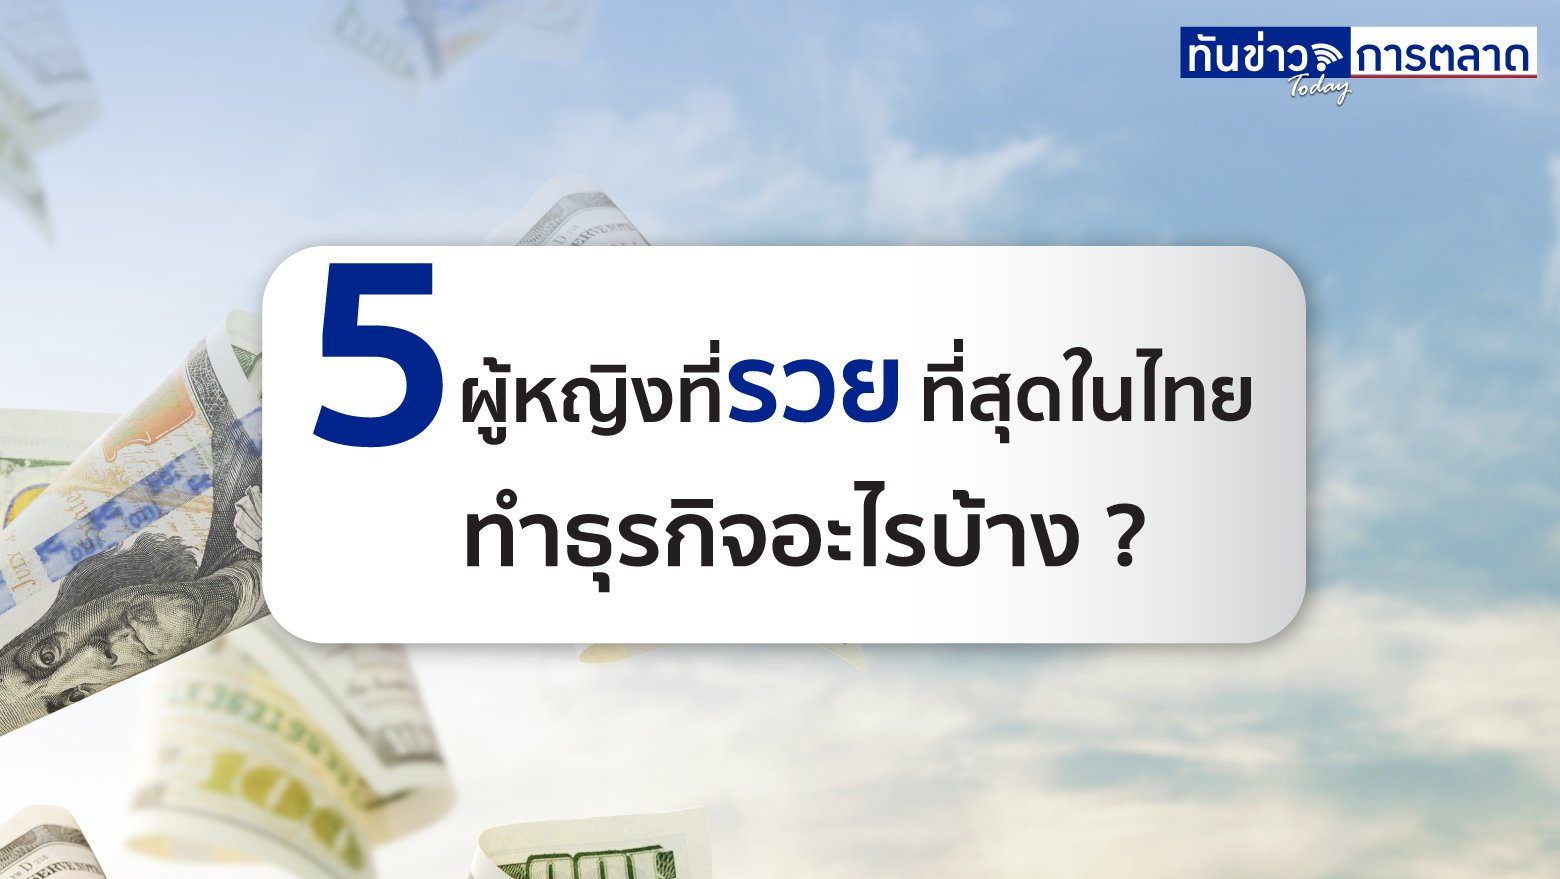 5 ผู้หญิงที่รวยที่สุดในไทย ทำธุรกิจอะไรบ้าง ?